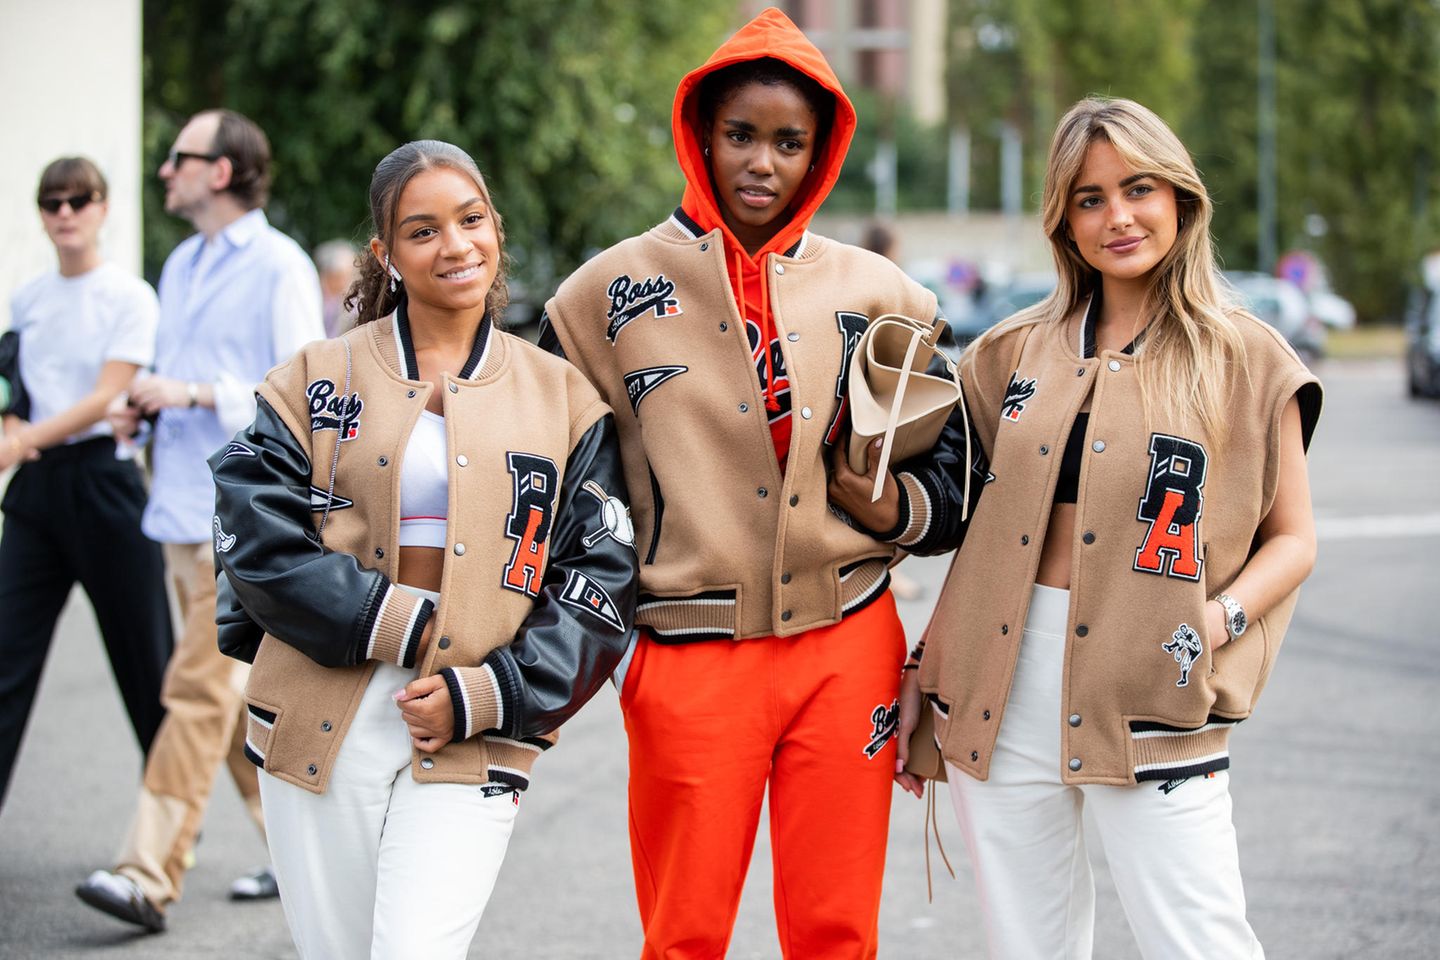 College Jacken aus den 90er Jahren feiern ihr Comeback: College Jacke im Street-Style